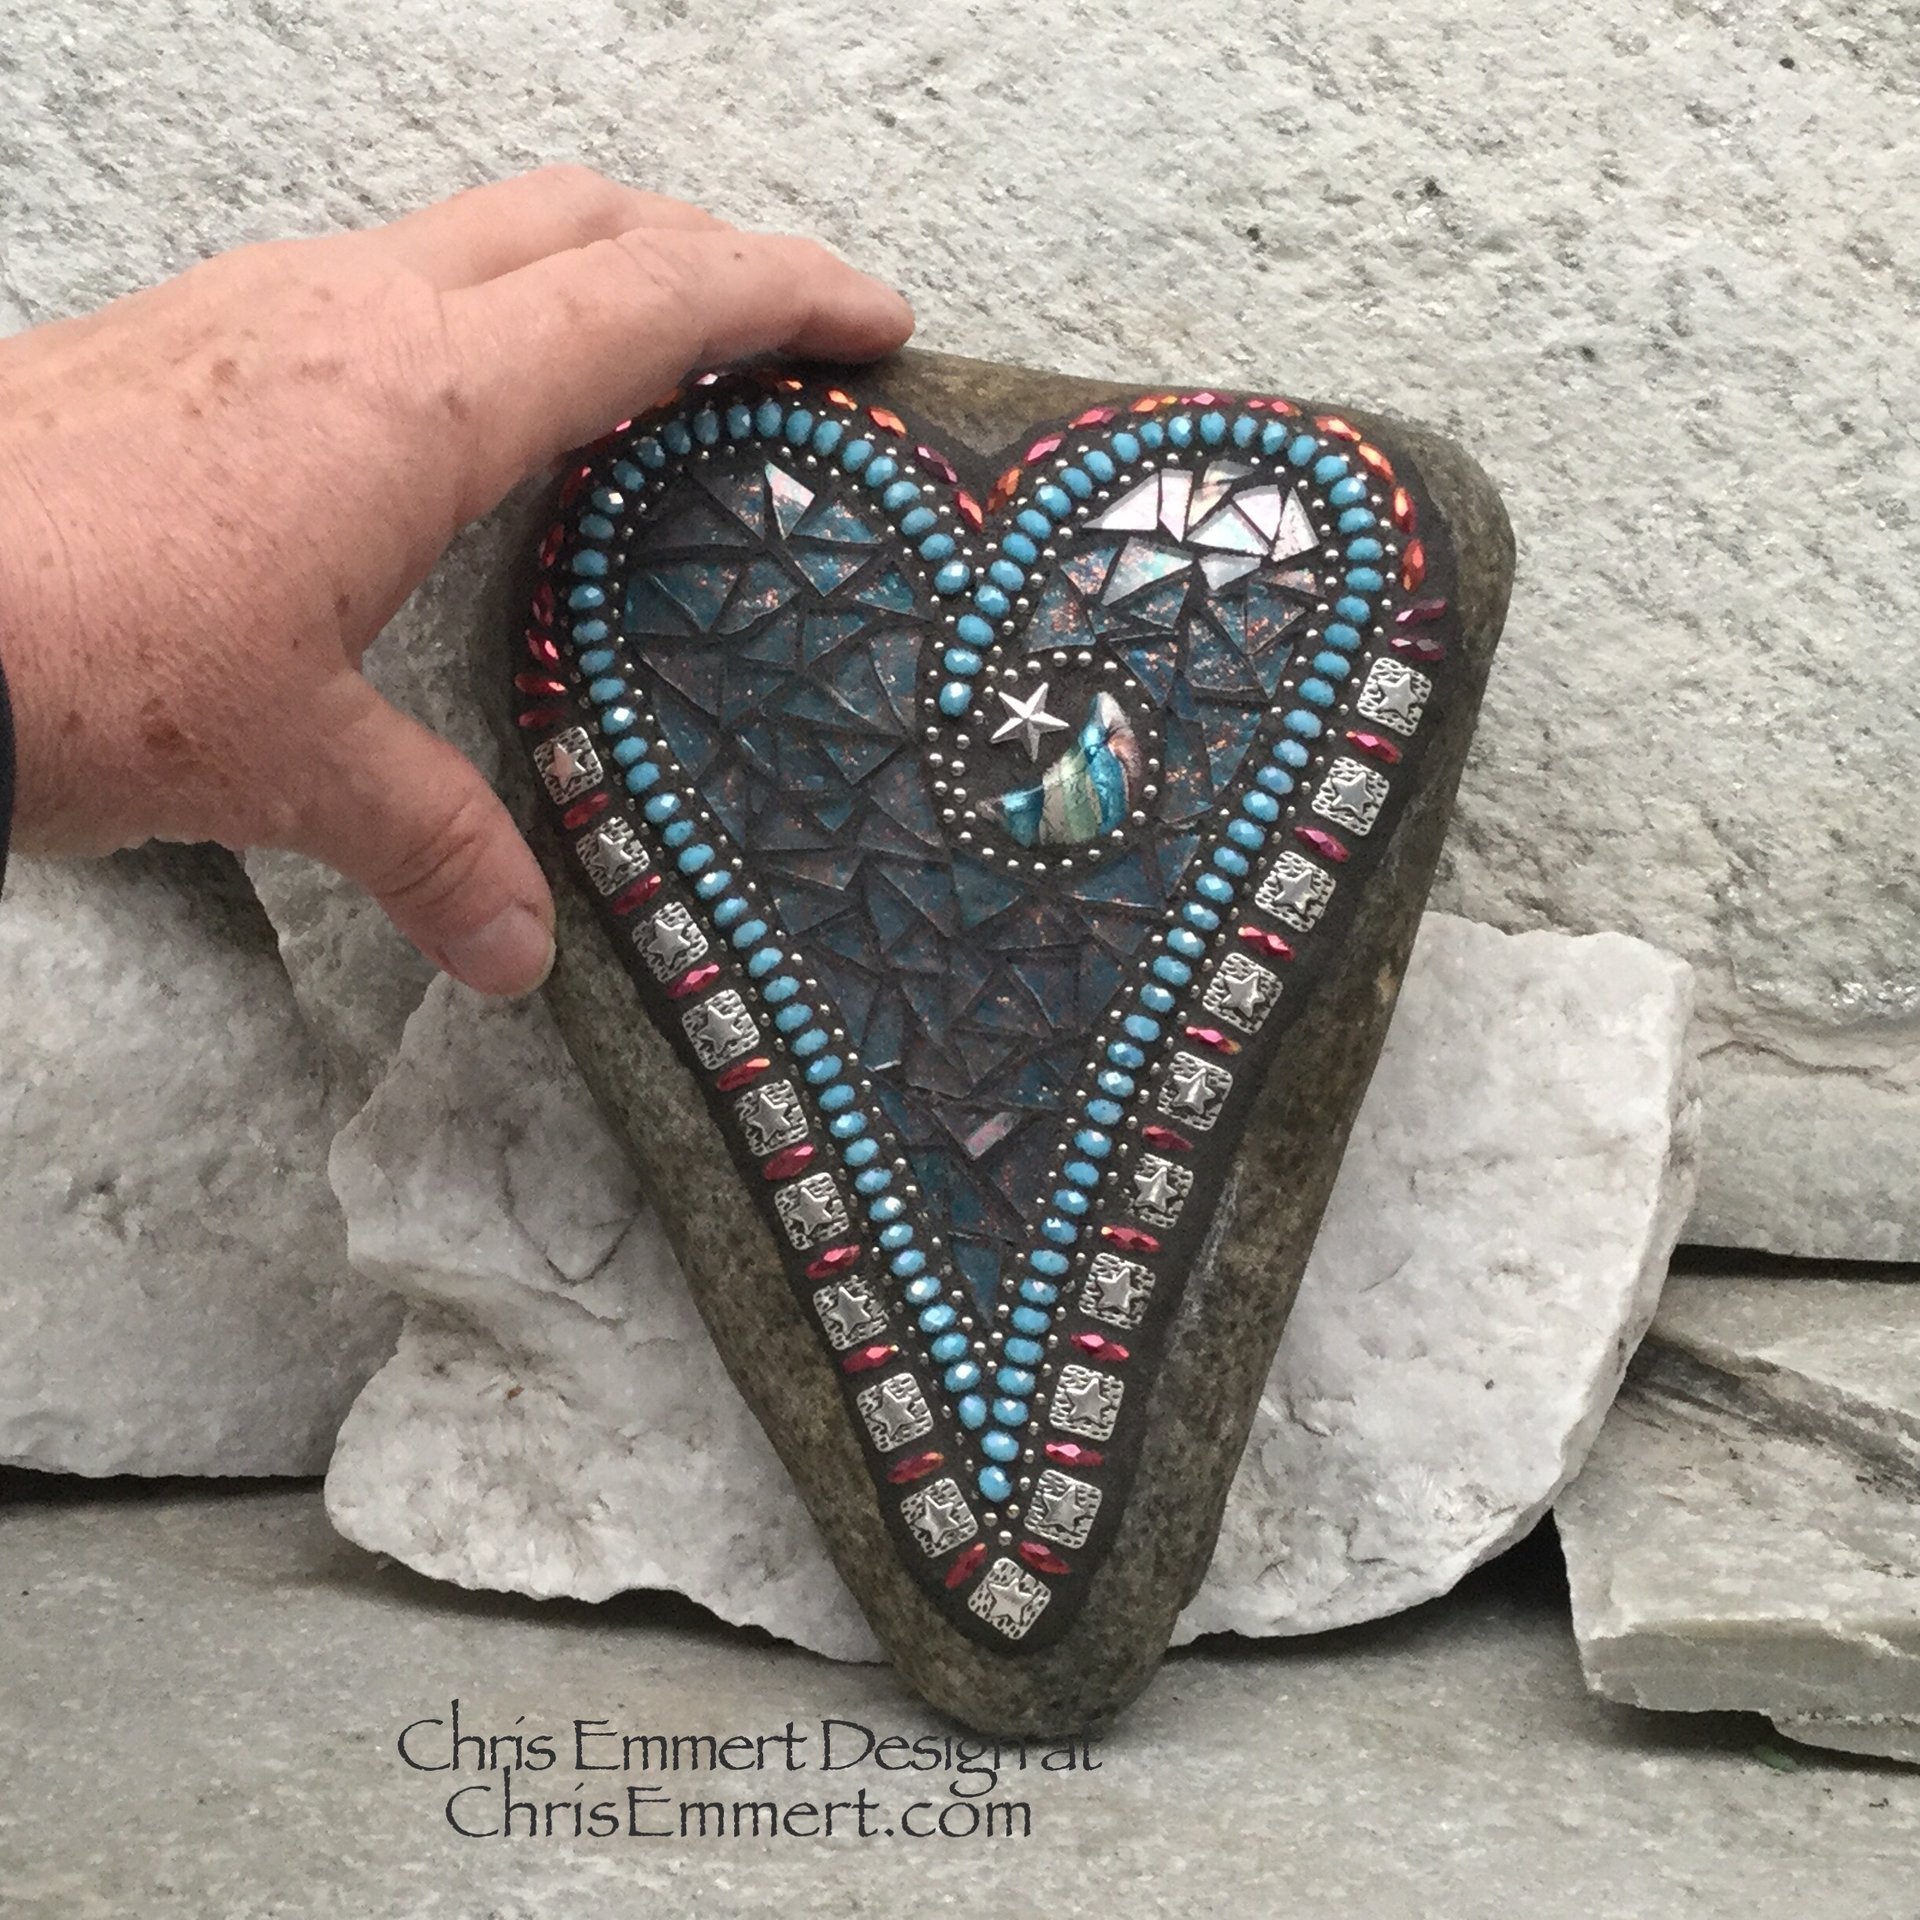 Moon and Star Blue Heart, Garden Stone, Mosaic, Garden Decor